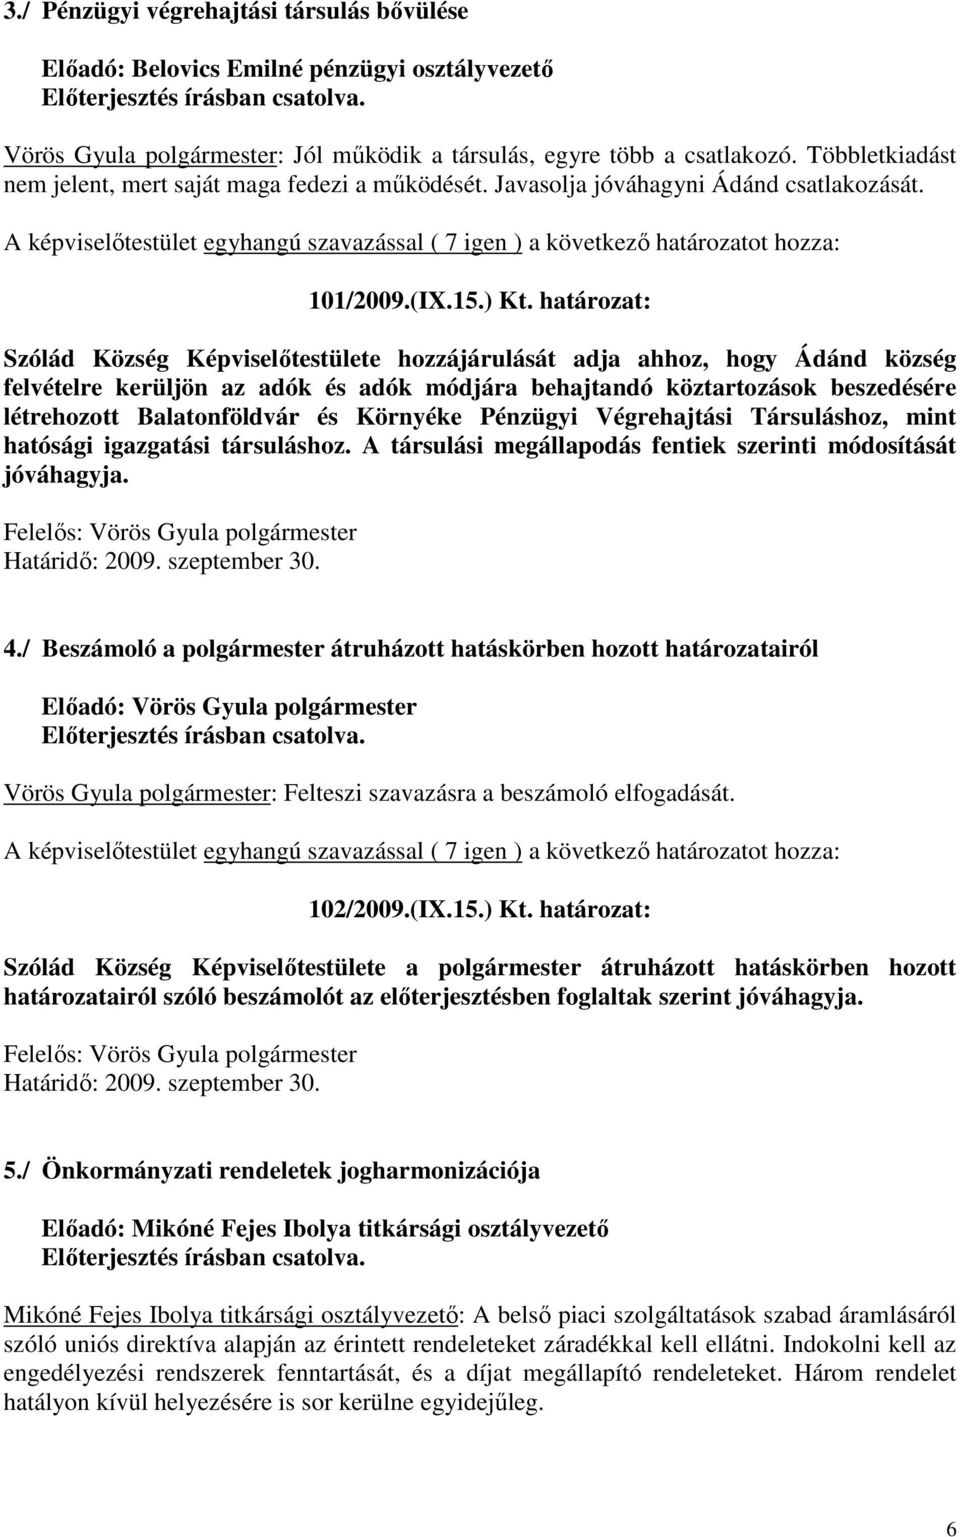 határozat: Szólád Község Képviselőtestülete hozzájárulását adja ahhoz, hogy Ádánd község felvételre kerüljön az adók és adók módjára behajtandó köztartozások beszedésére létrehozott Balatonföldvár és